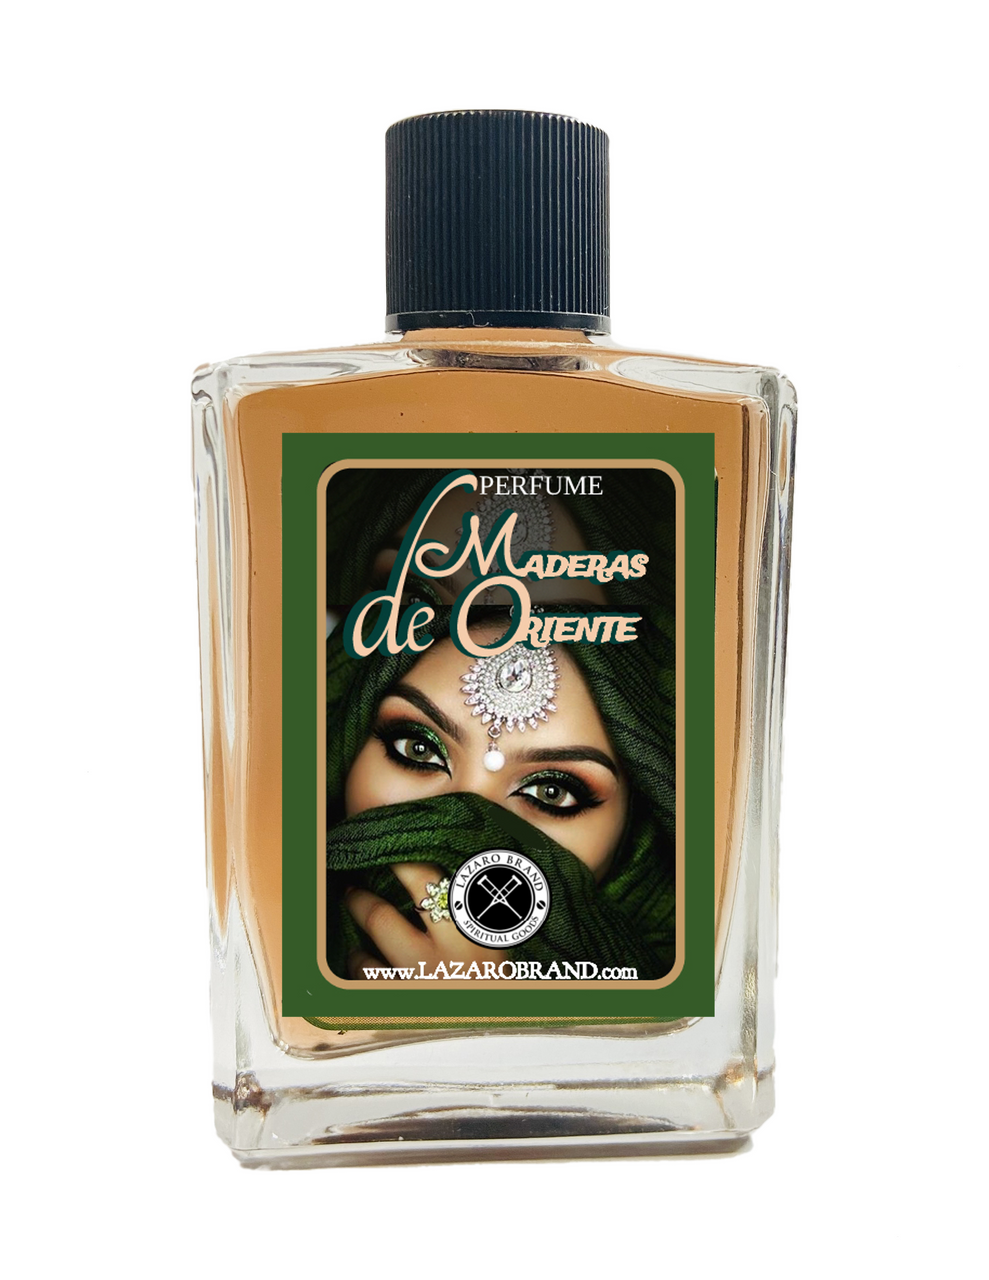 Maderas de Oriente Oscuro by PK Perfumes– Basenotes